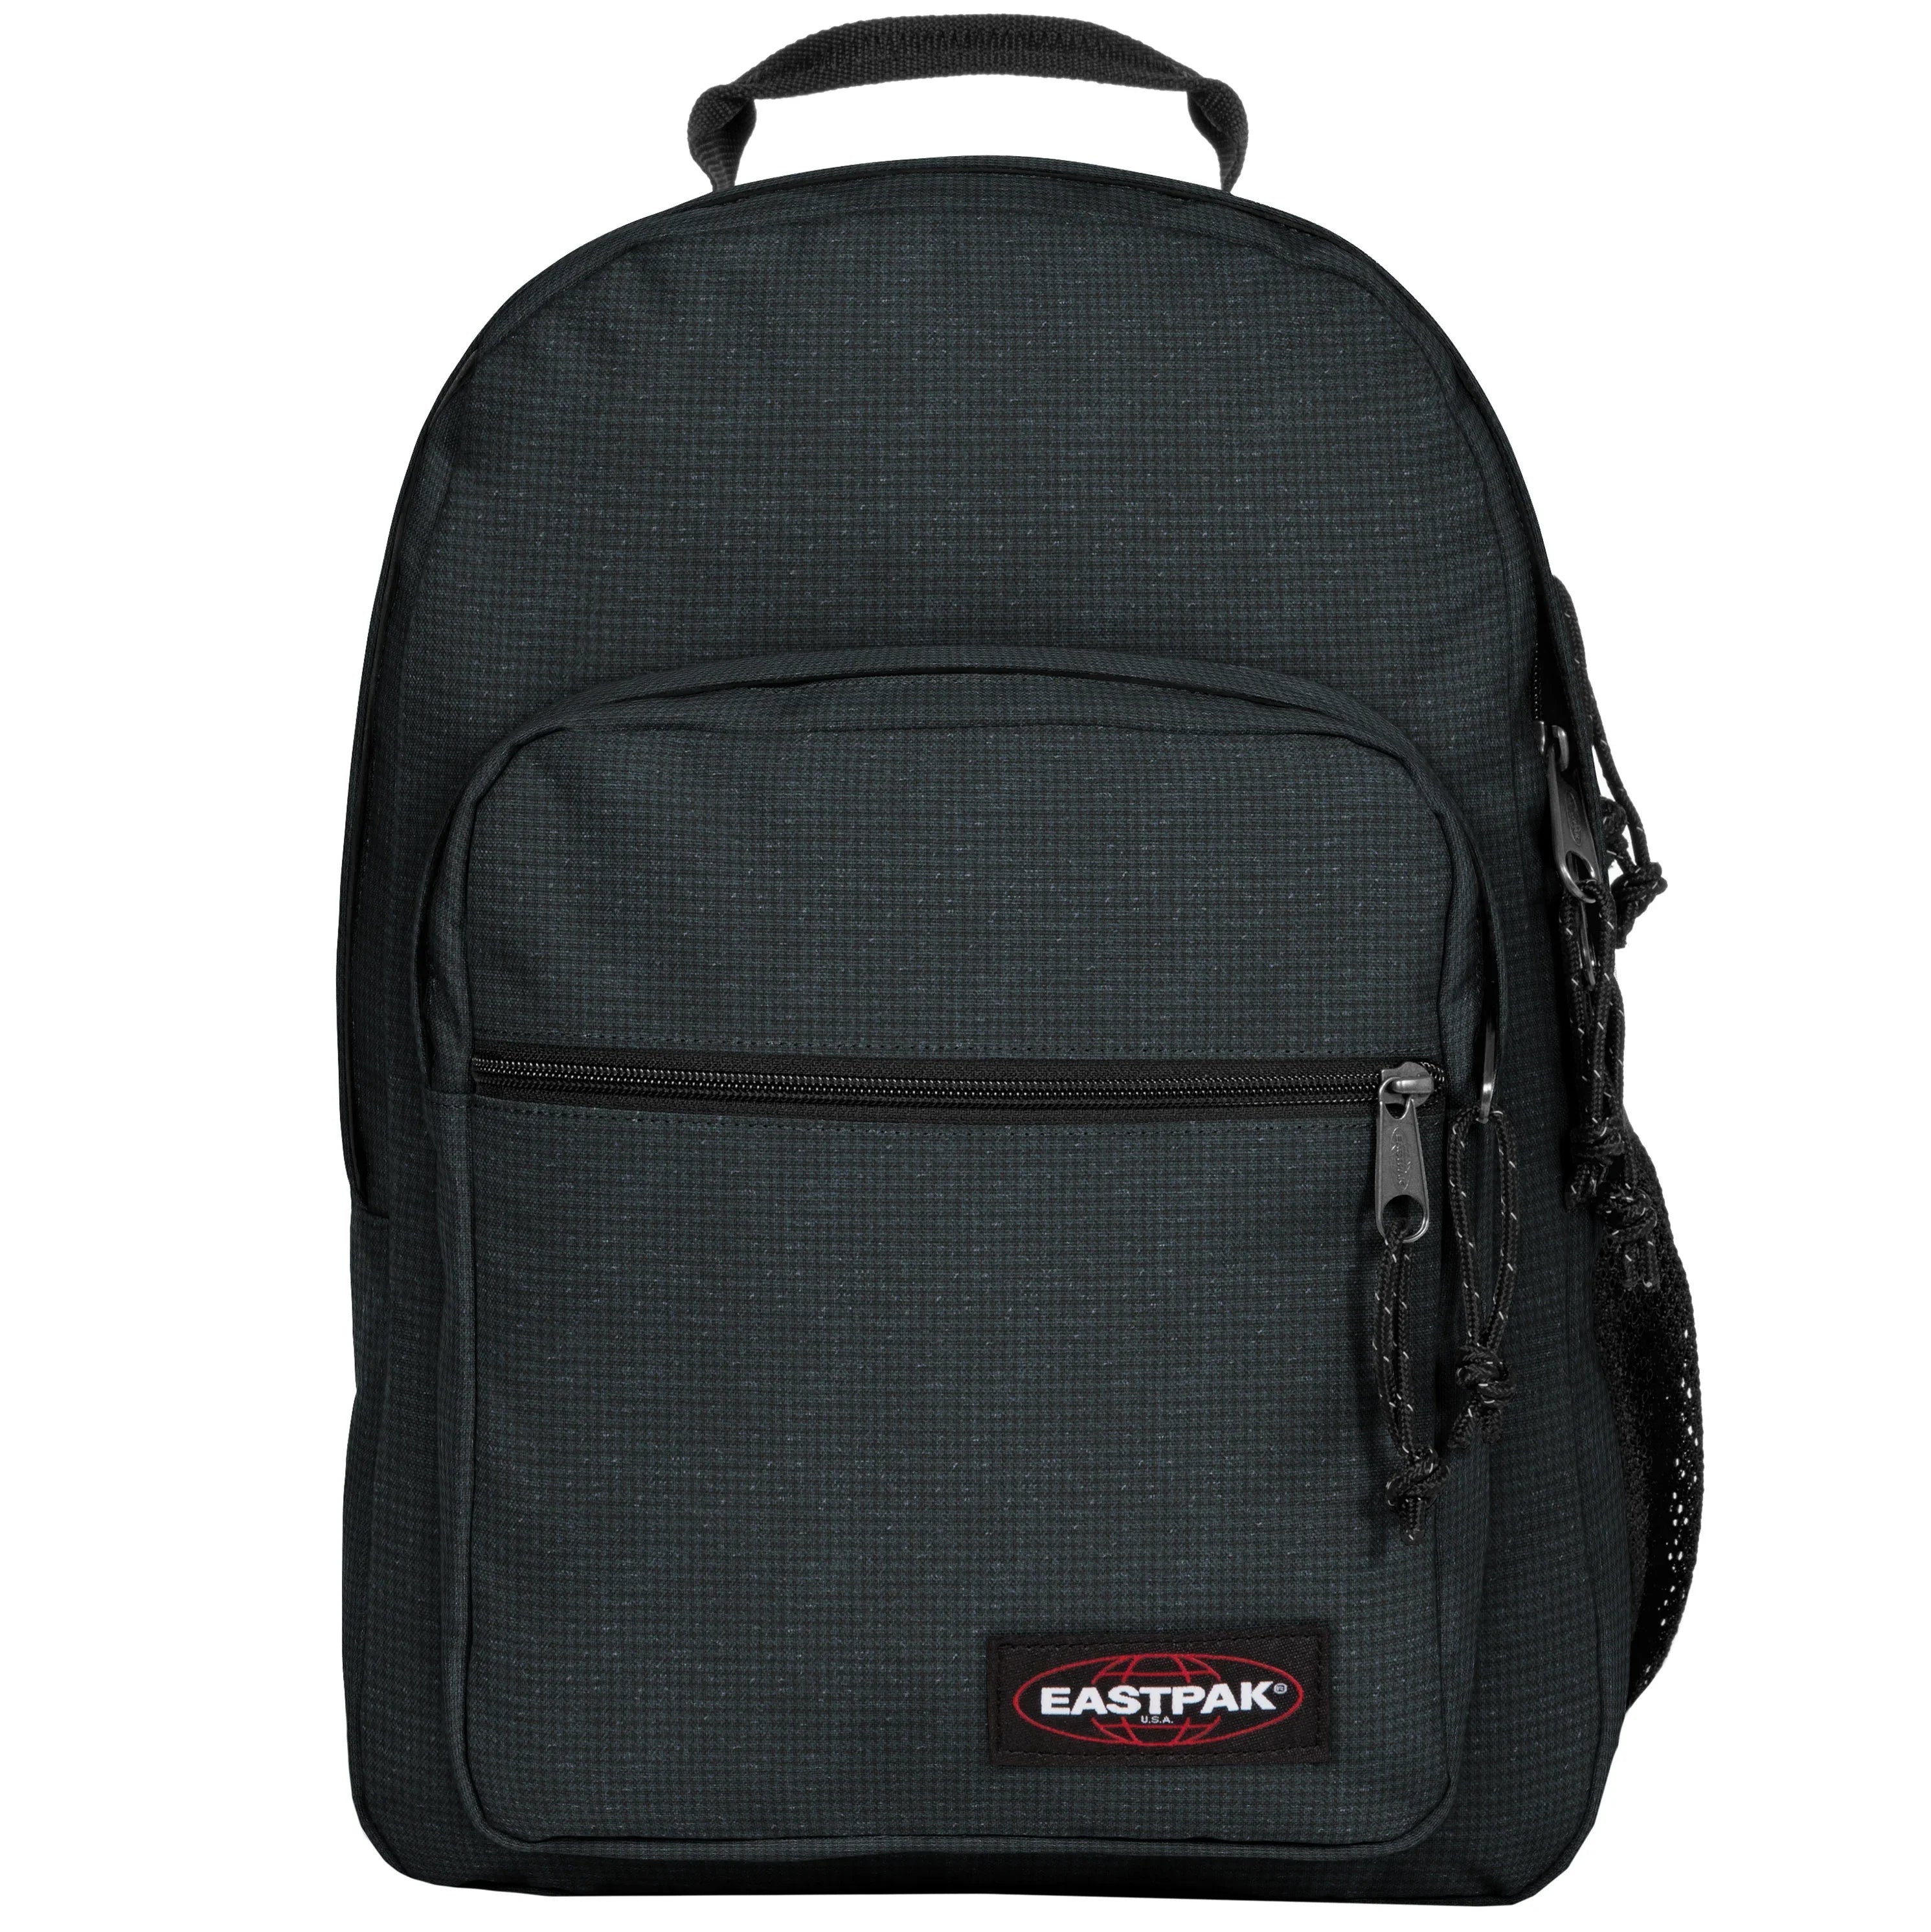 Eastpak Authentic Morius sac à dos pour ordinateur portable 43 cm - Dashing Blend